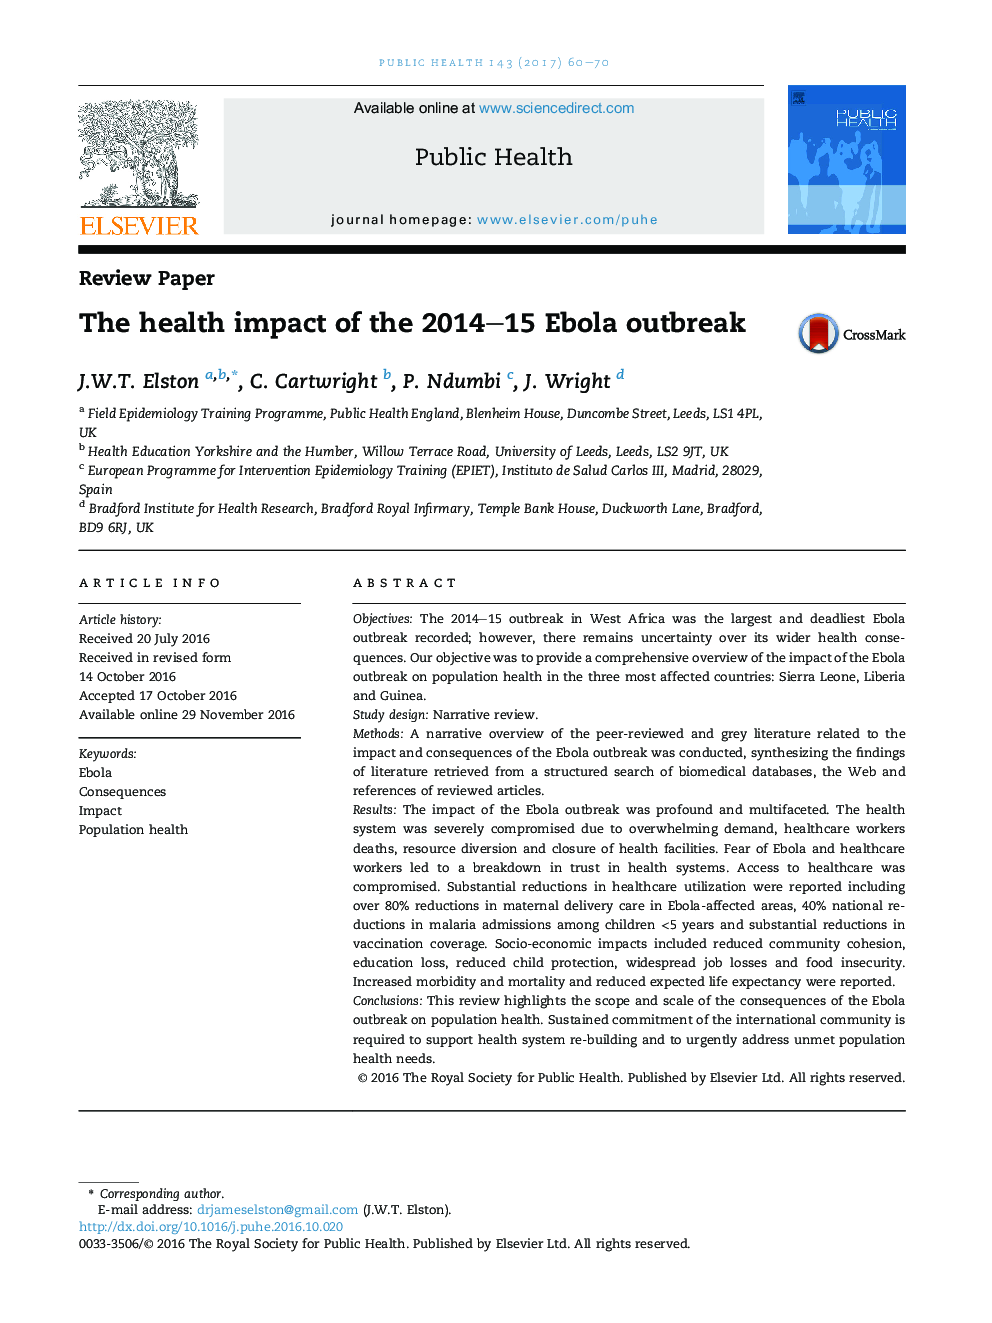 تأثیرات بهداشتی شیوع ابولا 2014-15 